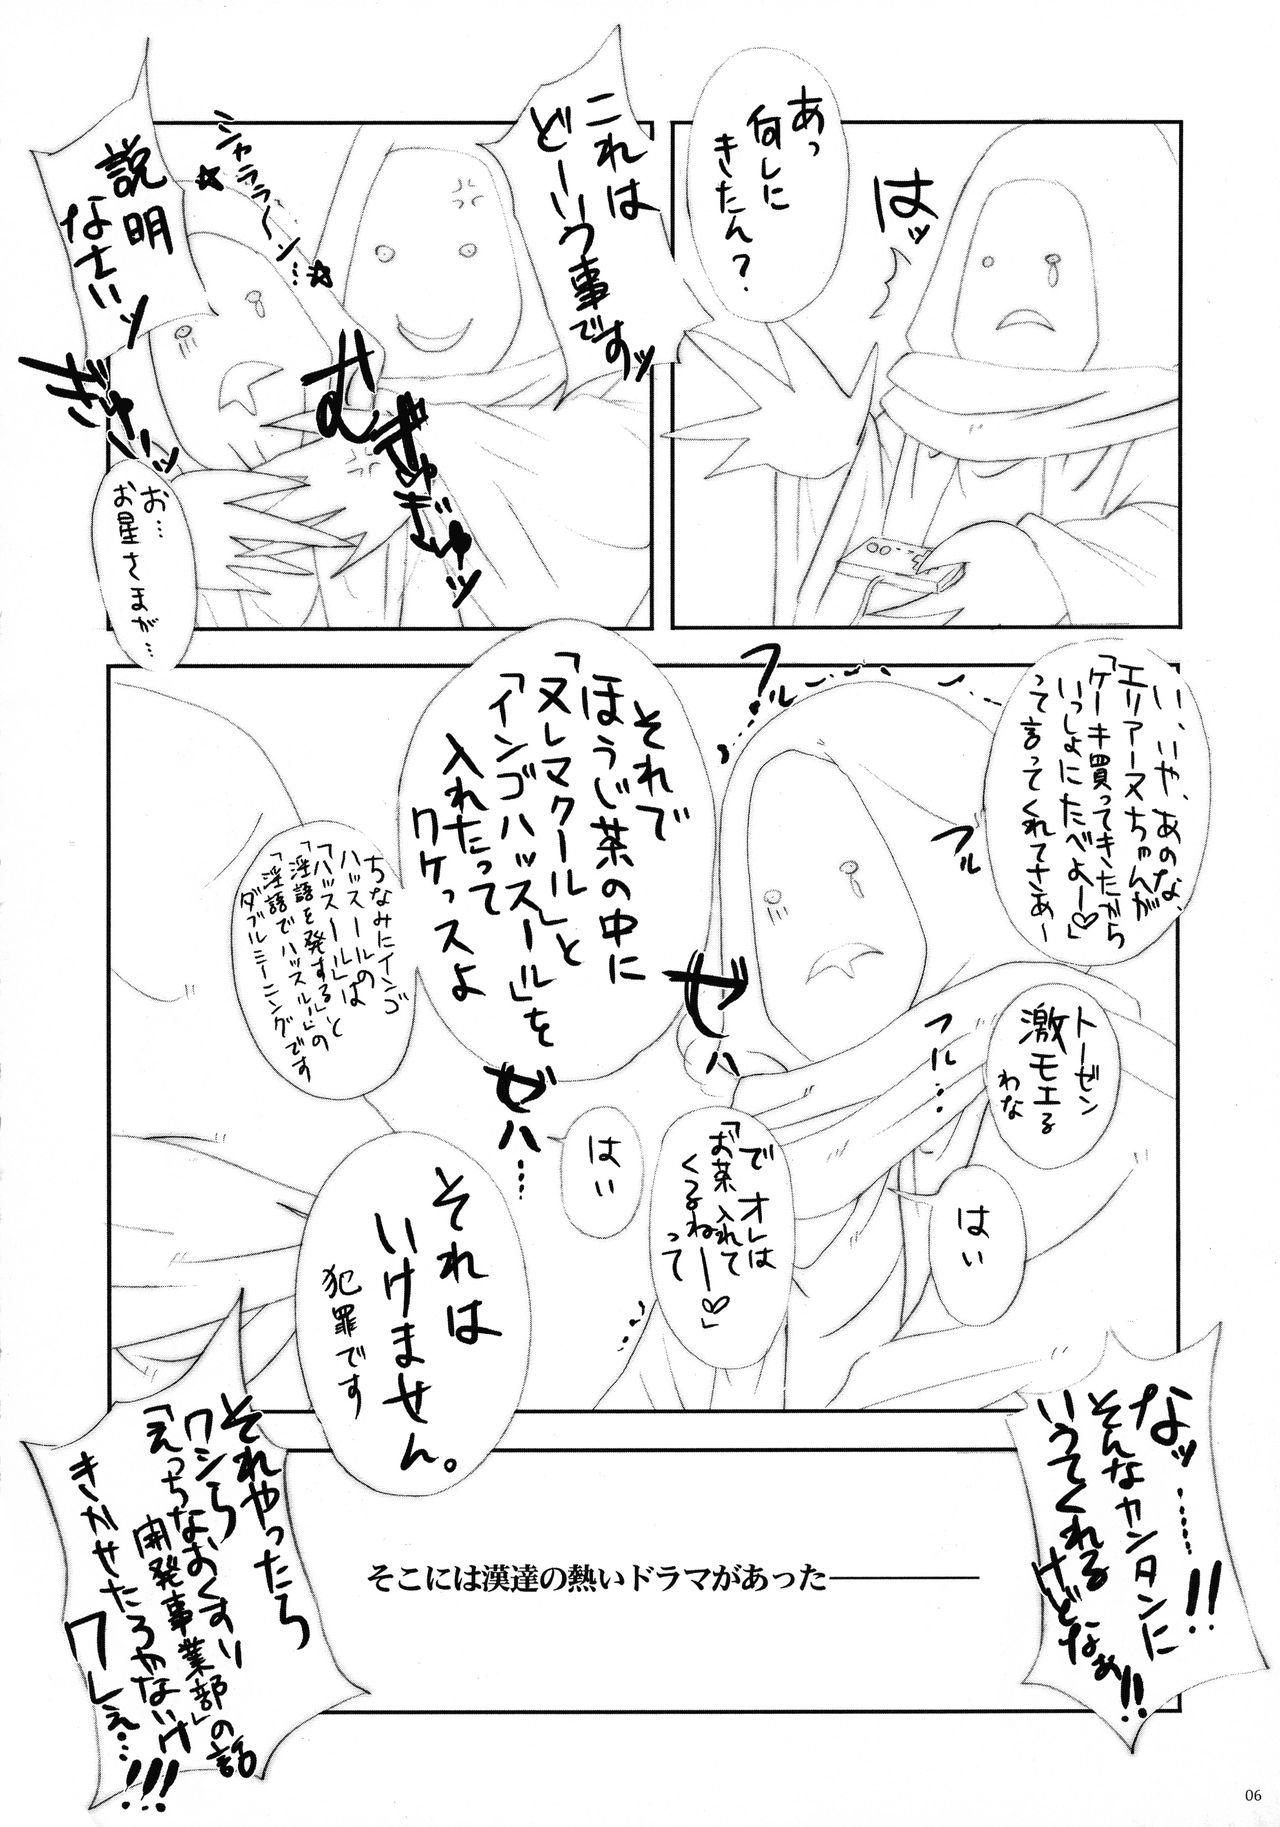 Fetish Akumakko Imouto gura Biton ★ Sai - Original Students - Page 6